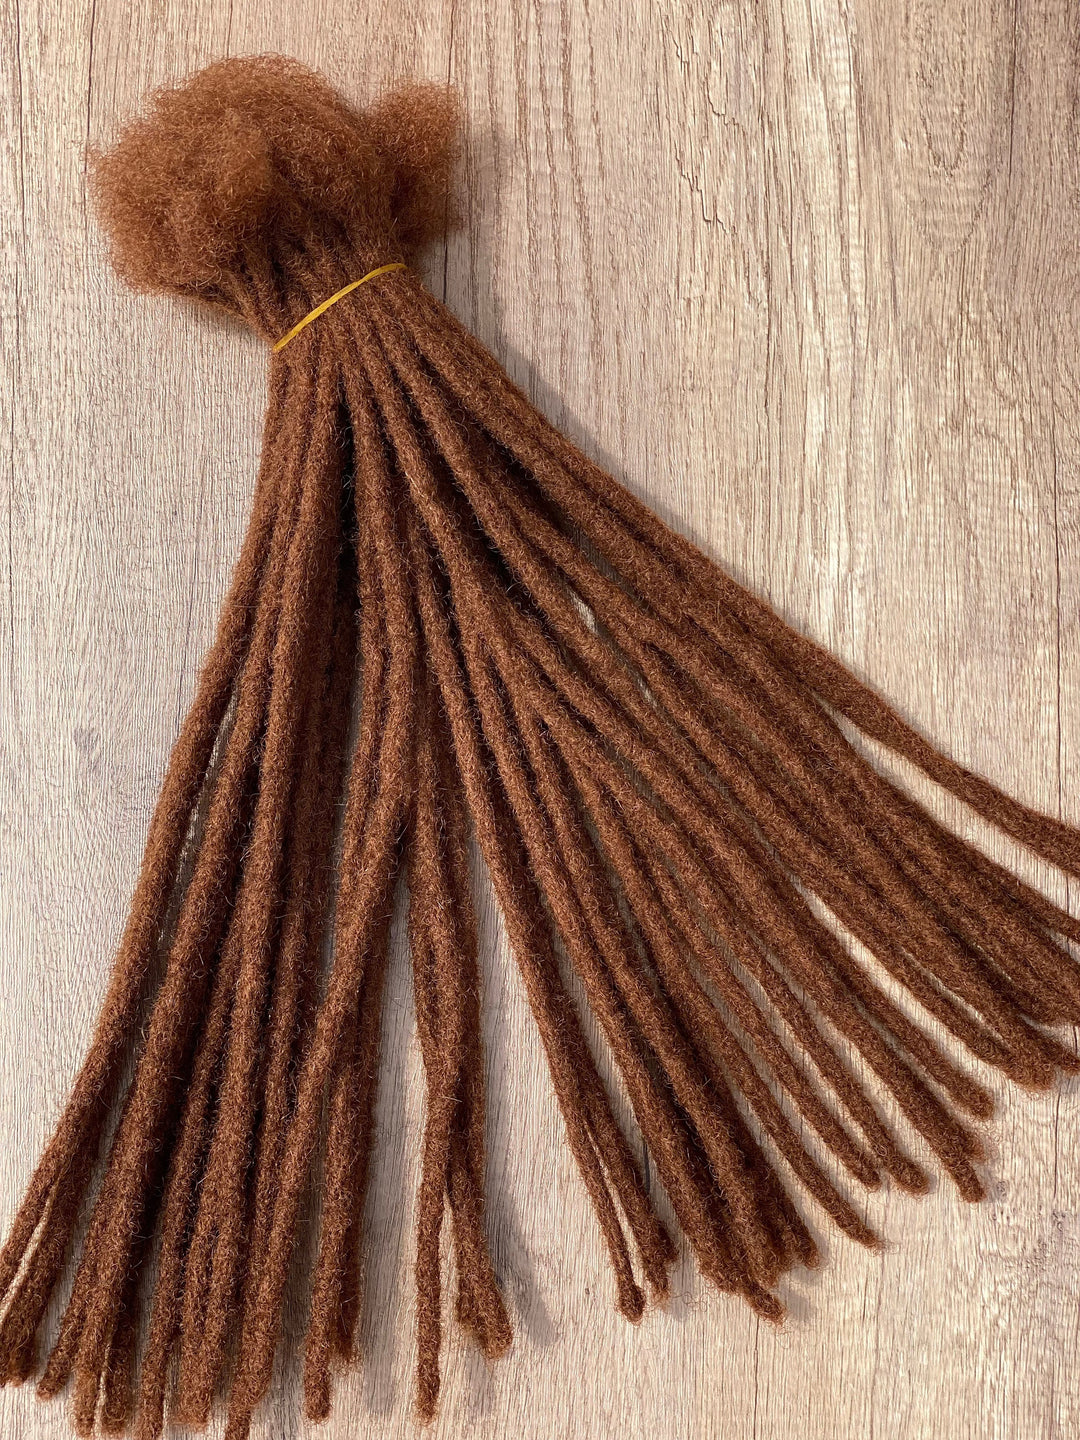 Human Hair Dreadlocks extensions. Color #30. 10 Locs Per Bundle. 100% Afro Kinky Dreadlocks Extensions.